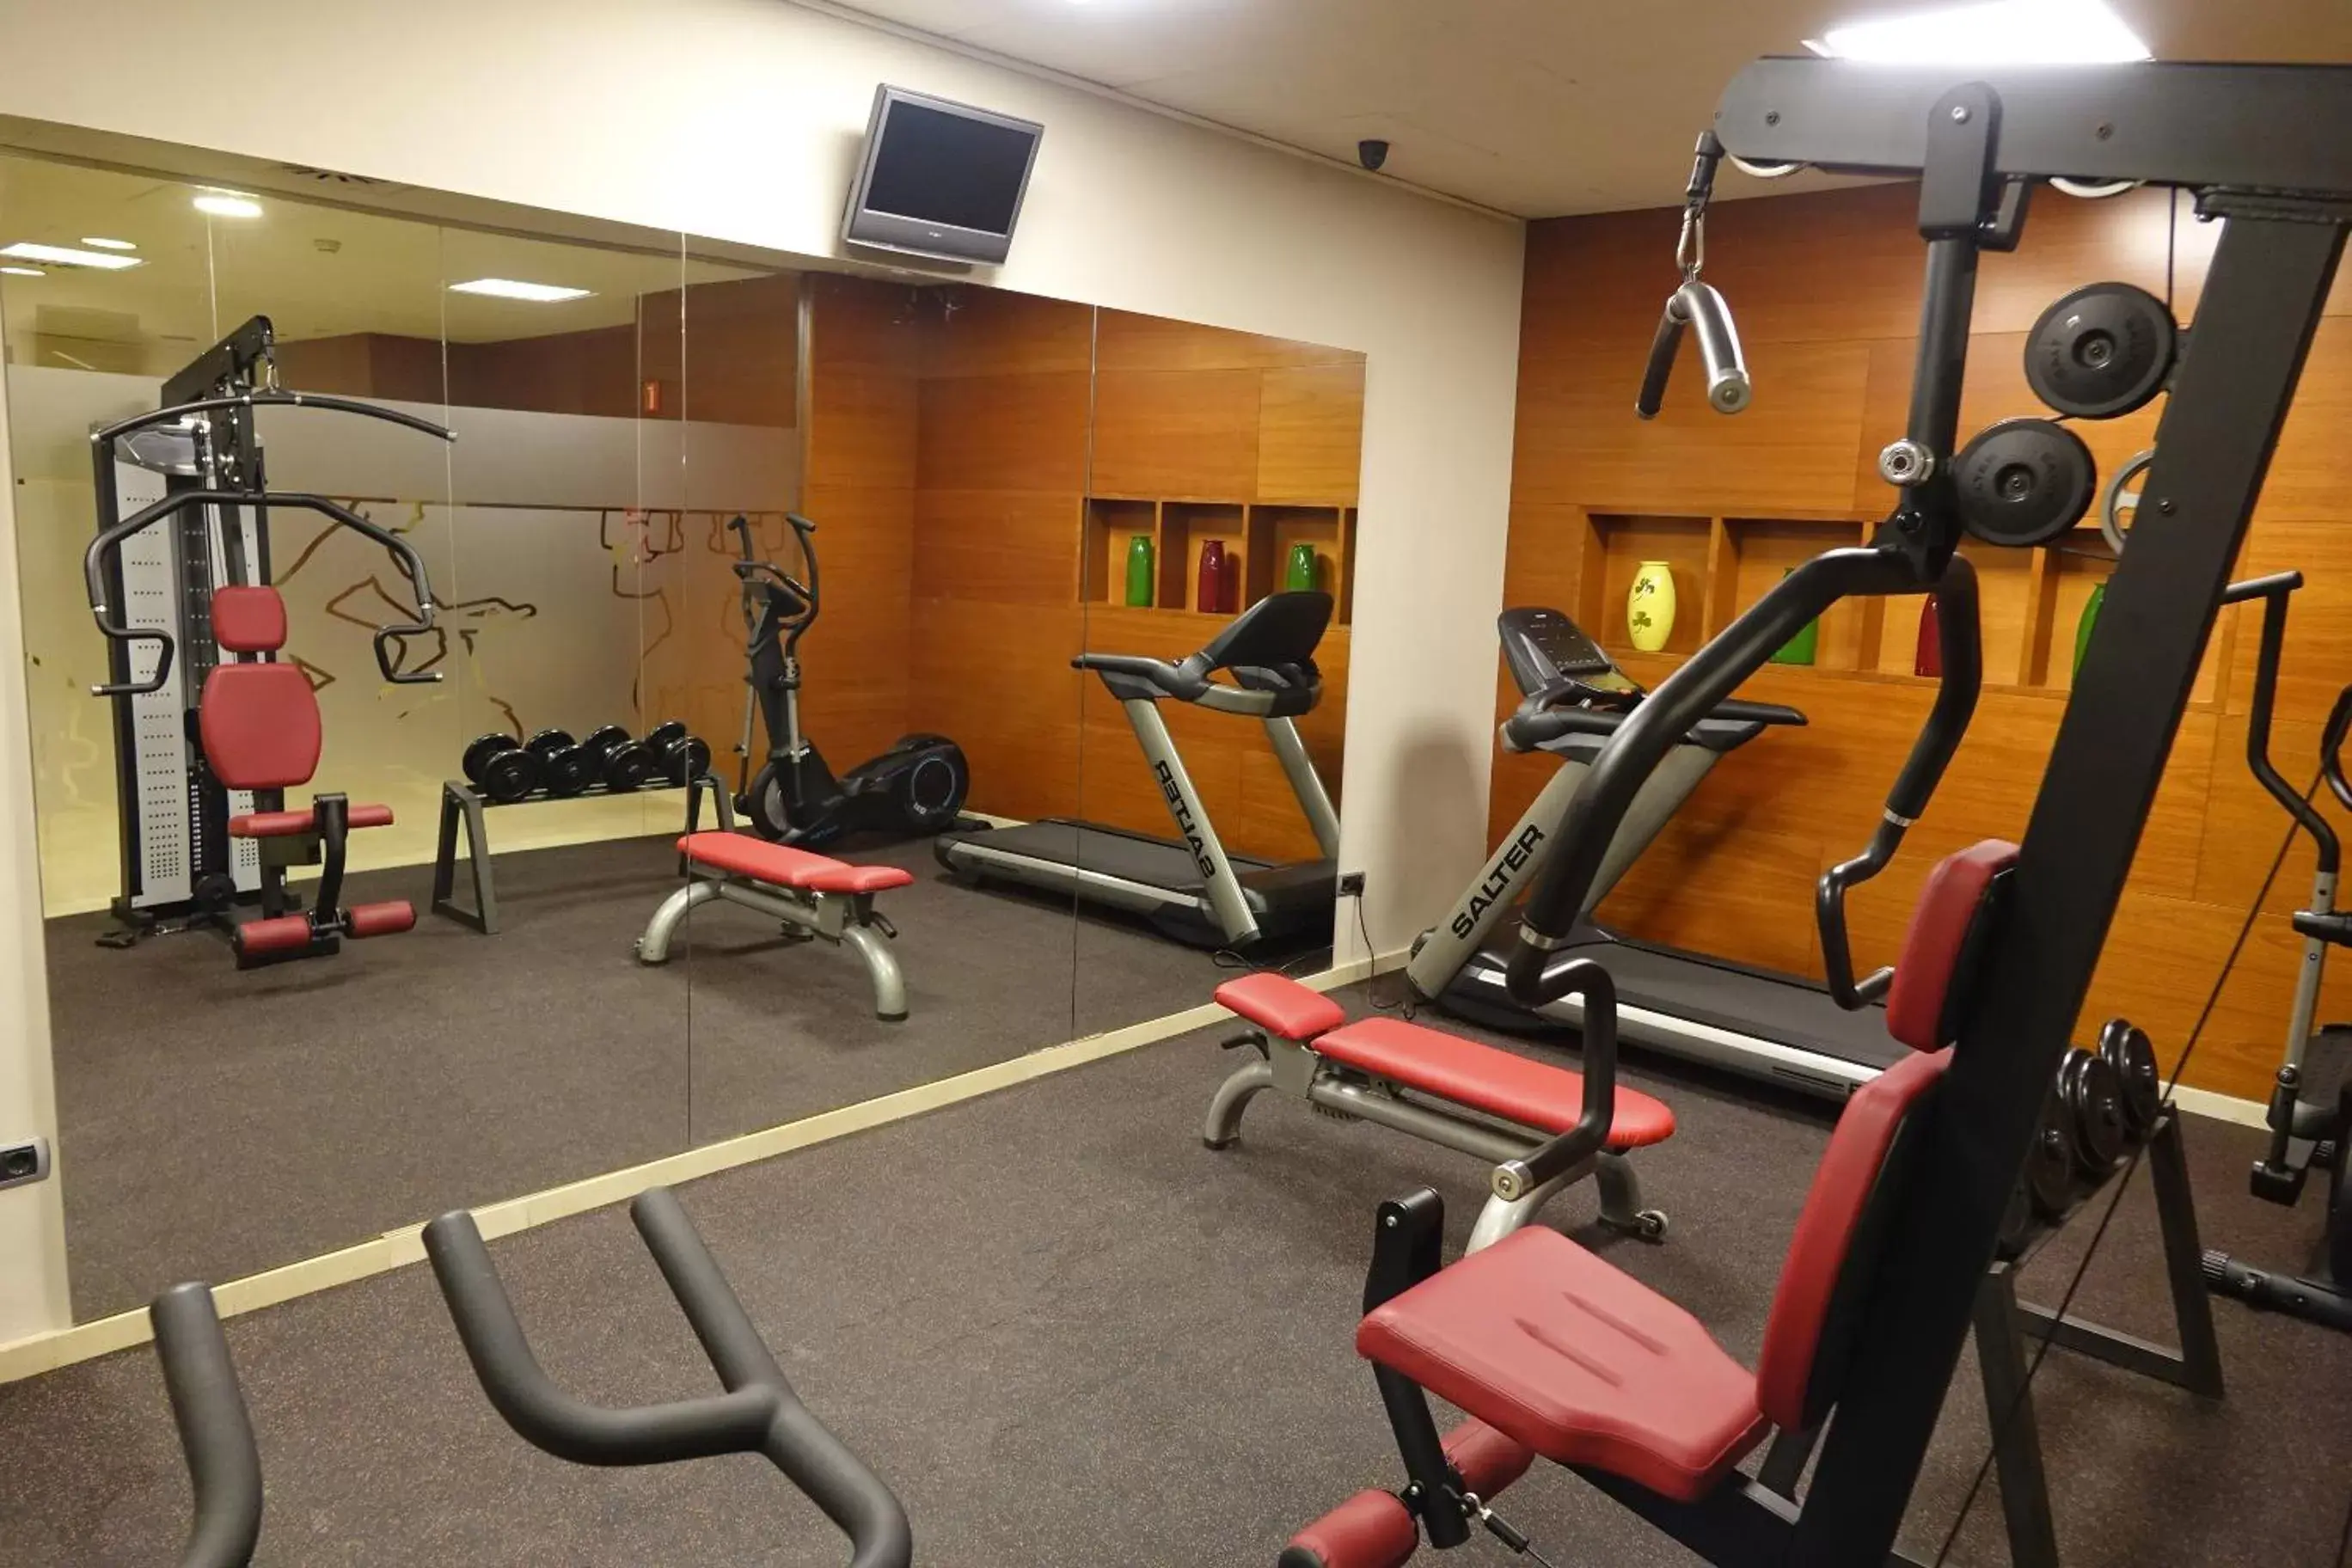 Fitness centre/facilities, Fitness Center/Facilities in Acevi Villarroel